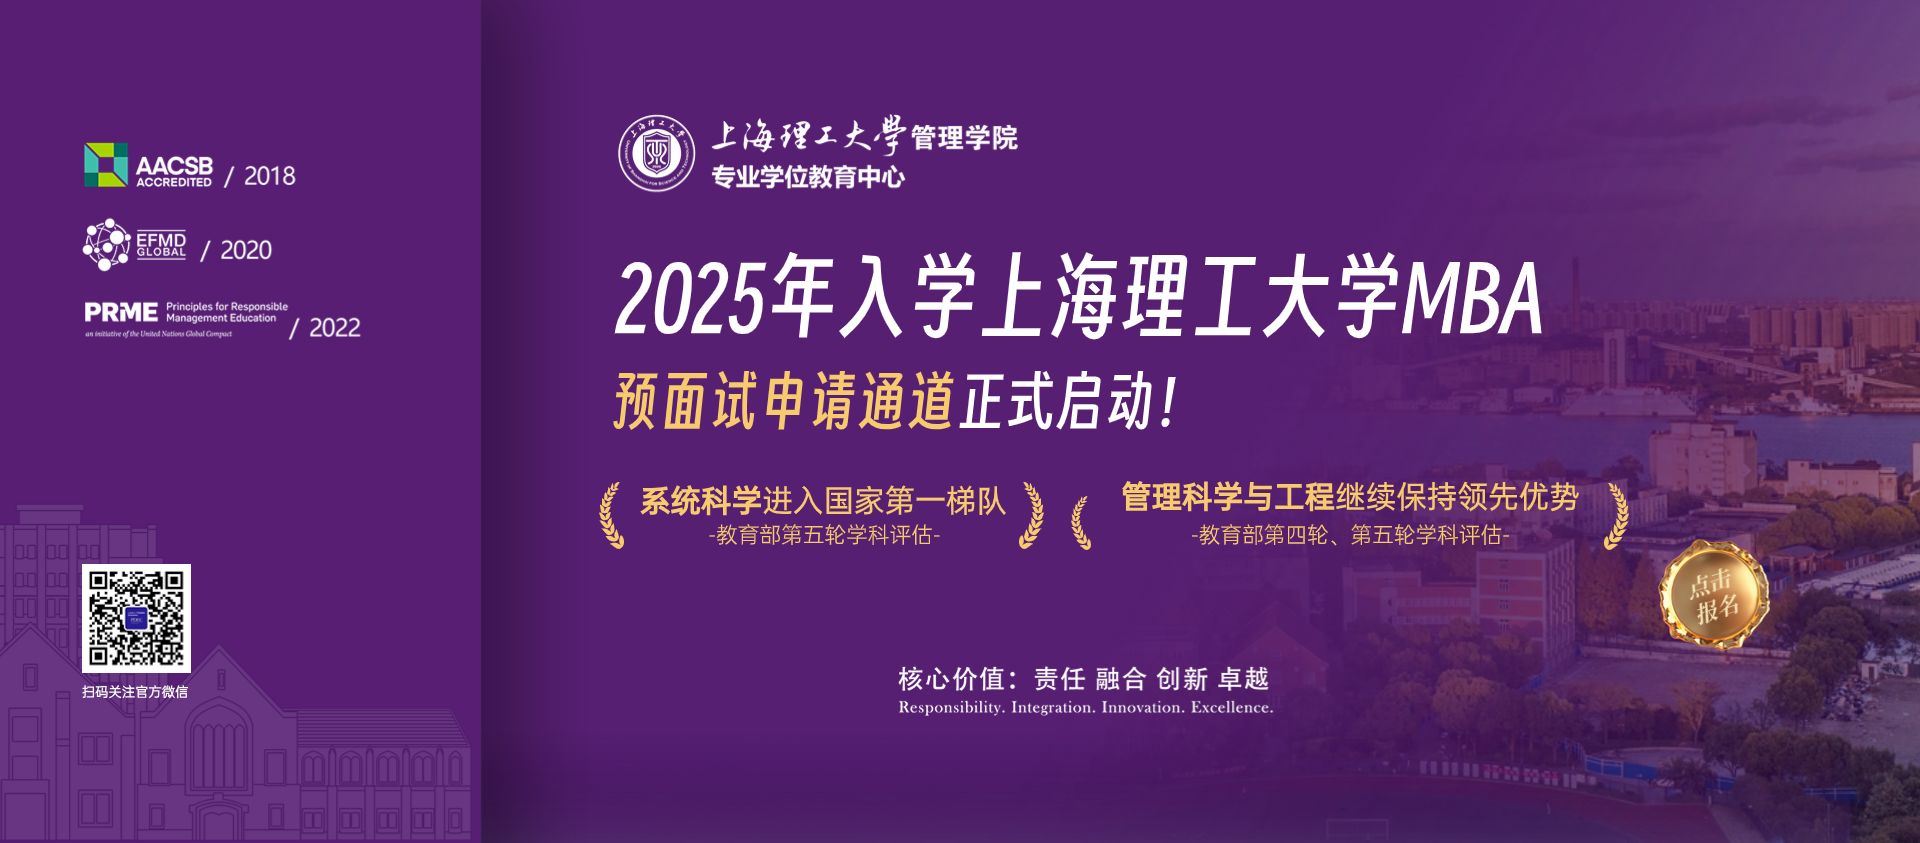 重要通知 | 2025年入学上海理工大学MBA预面试申请通道正式启动！